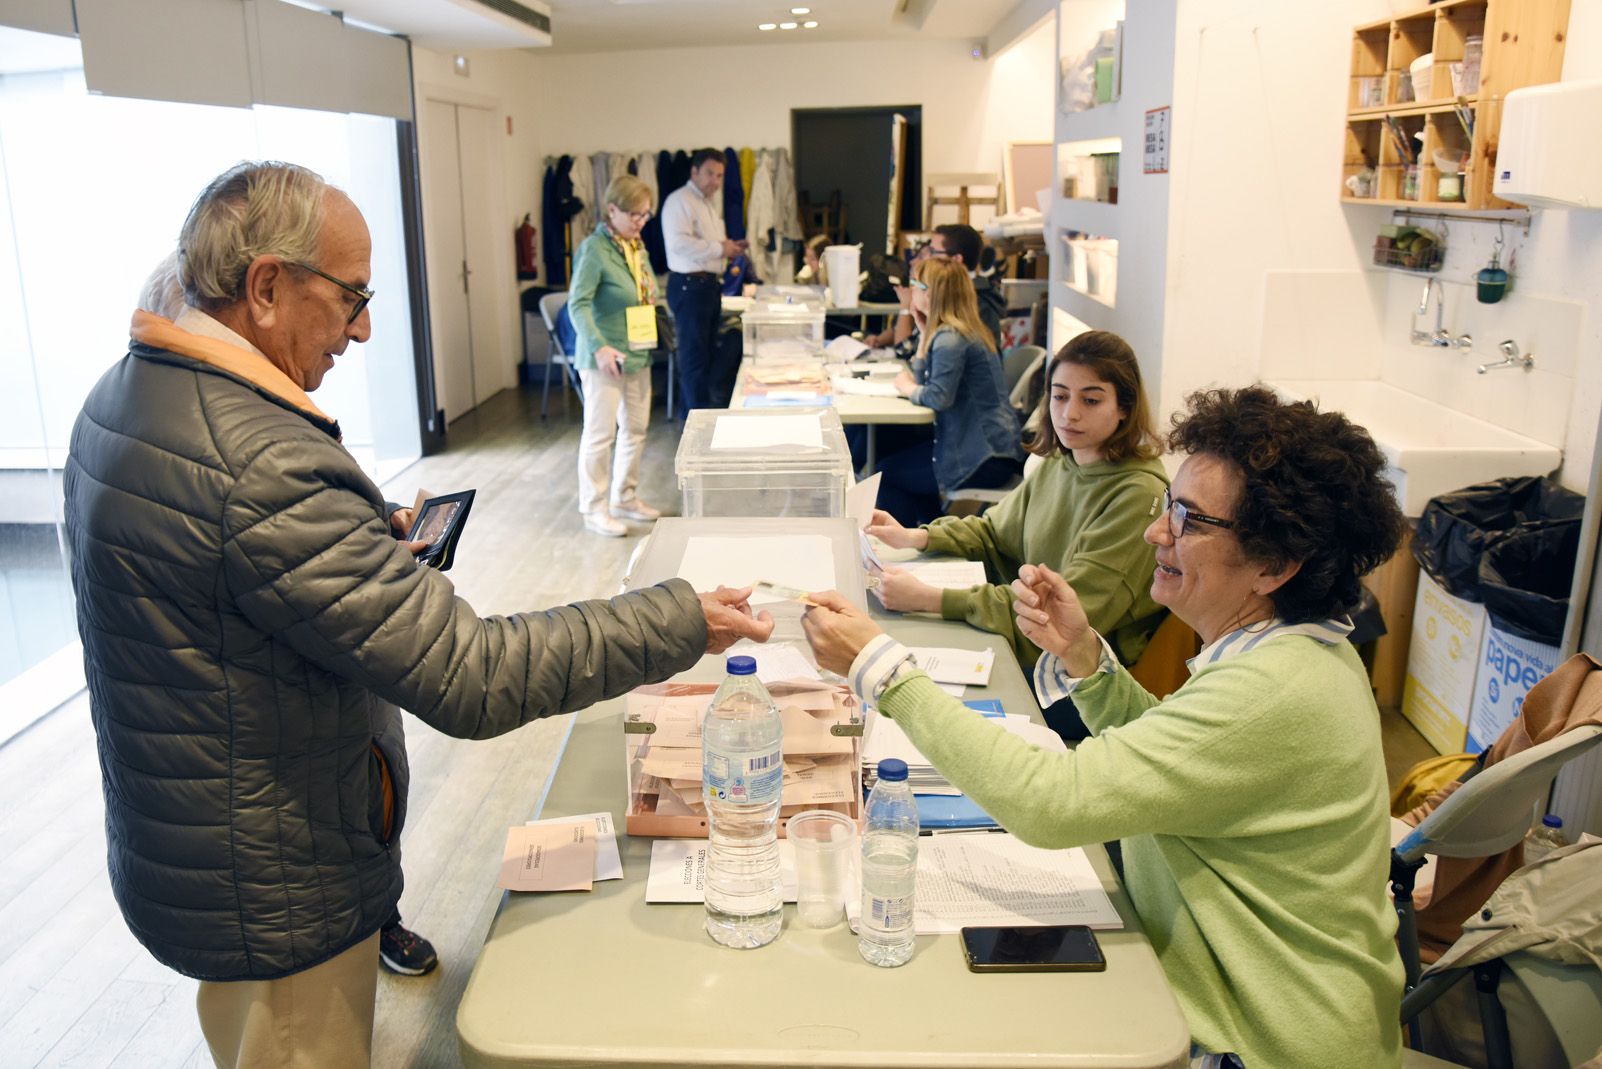 Votants al Centre d'Art Maristany per les eleccions al congrés Espanyol. Foto: Bernat Millet.